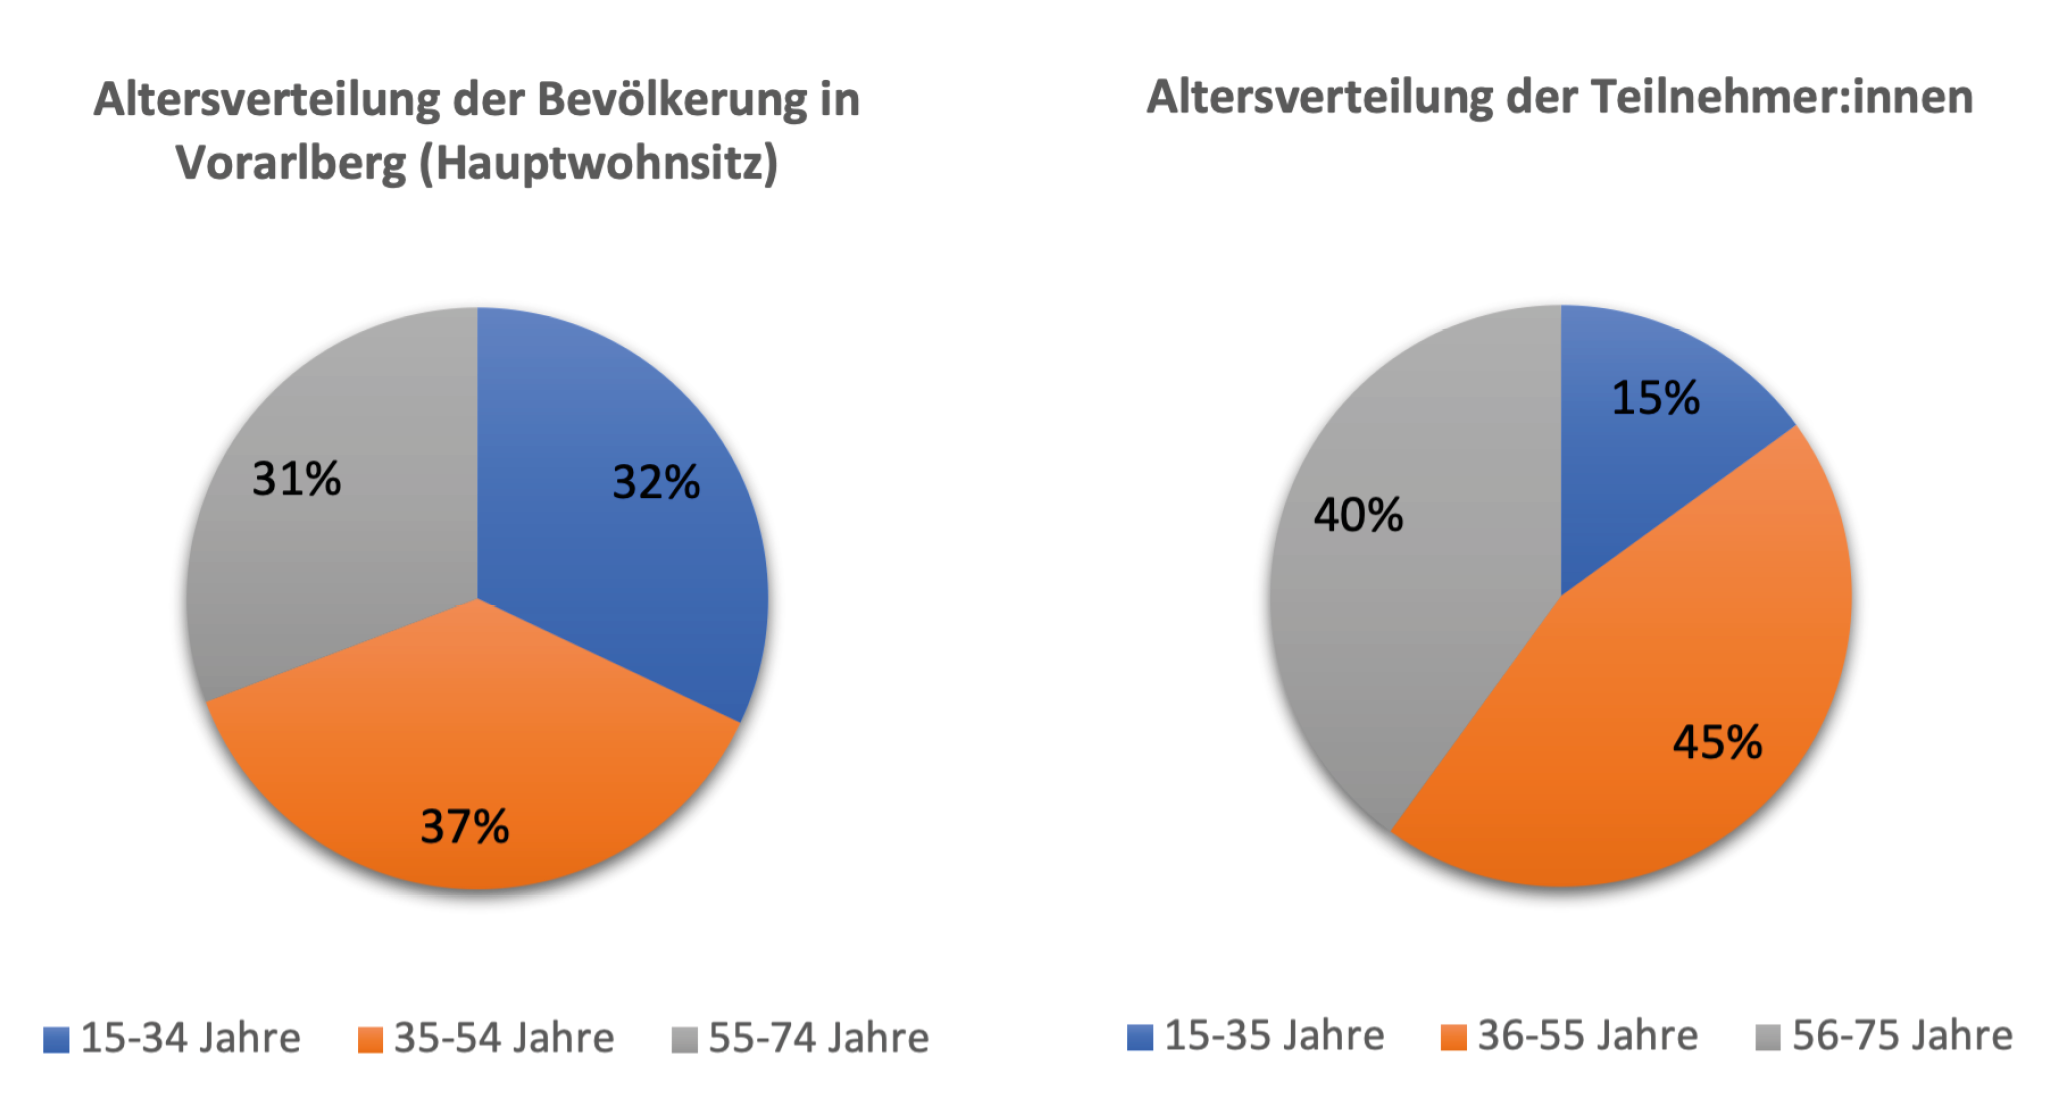 In Bezug auf das Altersverhältnis der gesamten Bevölkerung Vorarlbergs zeigt sich eine gleichmäßige Verteilung. Die größte Altersgruppe sind Personen im Alter von 35 bis 54 Jahren (37%), gefolgt von den 15- bis 34-Jährigen (32%) und den 55- bis 74-Jährigen (31%).

 

Bei den Teilnehmer:innen der Studie hingegen gibt es eine deutliche Abweichung in der Altersverteilung im Vergleich zur Gesamtbevölkerung. Die Mehrheit der Studienteilnehmer:innen ist zwischen 36 und 55 Jahren alt (45%), während 40% zwischen 56 und 75 Jahren alt sind. Nur 15% der Studienteilnehmer:innen gehören zur Altersgruppe von 15 bis 35 Jahren.
Diese
Daten deuten darauf hin, dass die Studienteilnehmer:innen tendenziell älter
sind als die Durchschnittsbevölkerung Vorarlbergs und dass es Unterschiede in
den Wohnorten gibt, die in den Analysen berücksichtigt werden sollten.